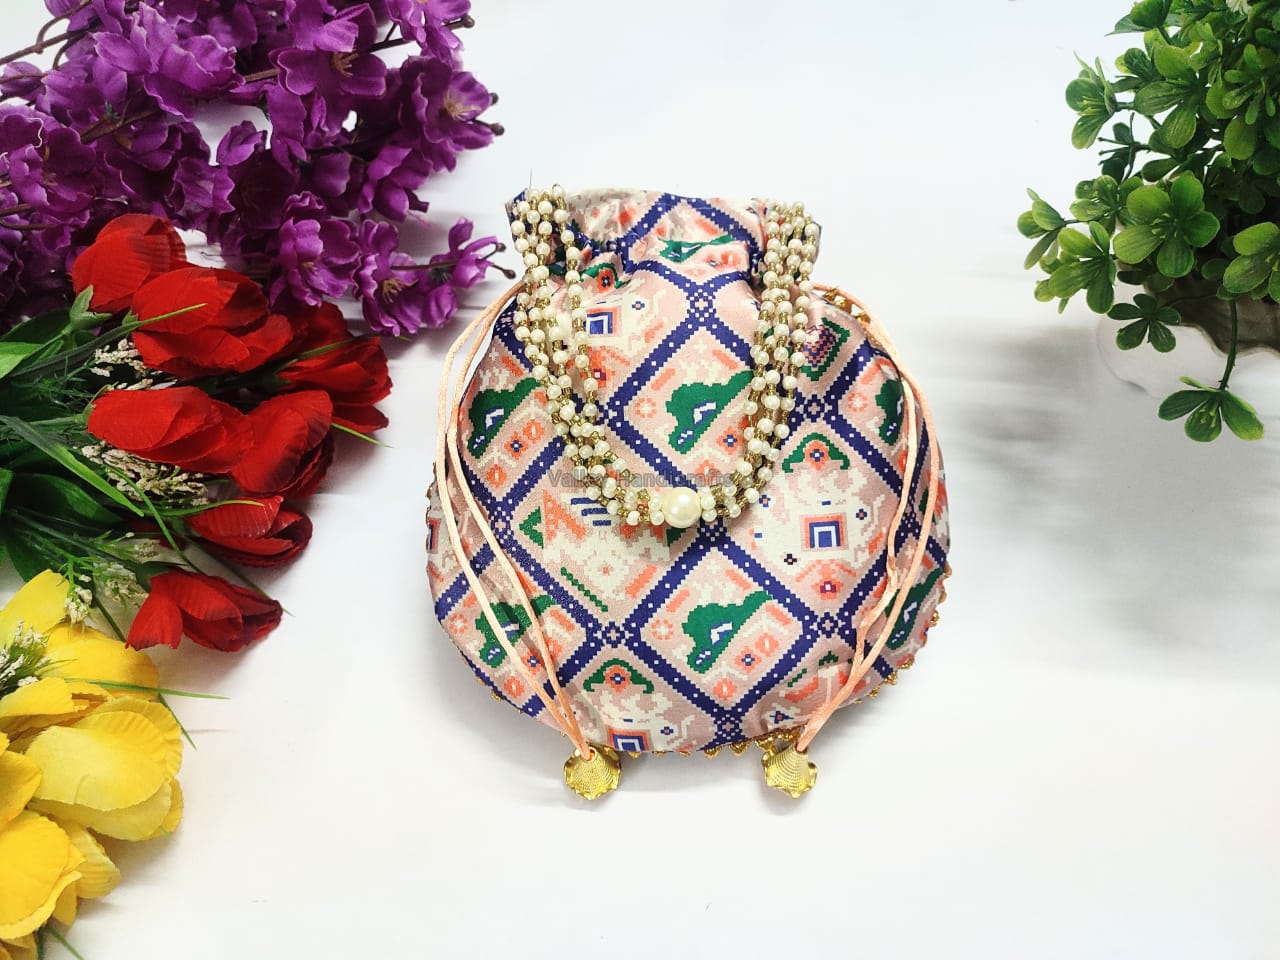 LAMANSH ® potli bags Pack of 10 / Assorted colors LAMANSH (Pack of 10) 9*9 inch Assorted colors Silk Patola Print Potli bags for Women